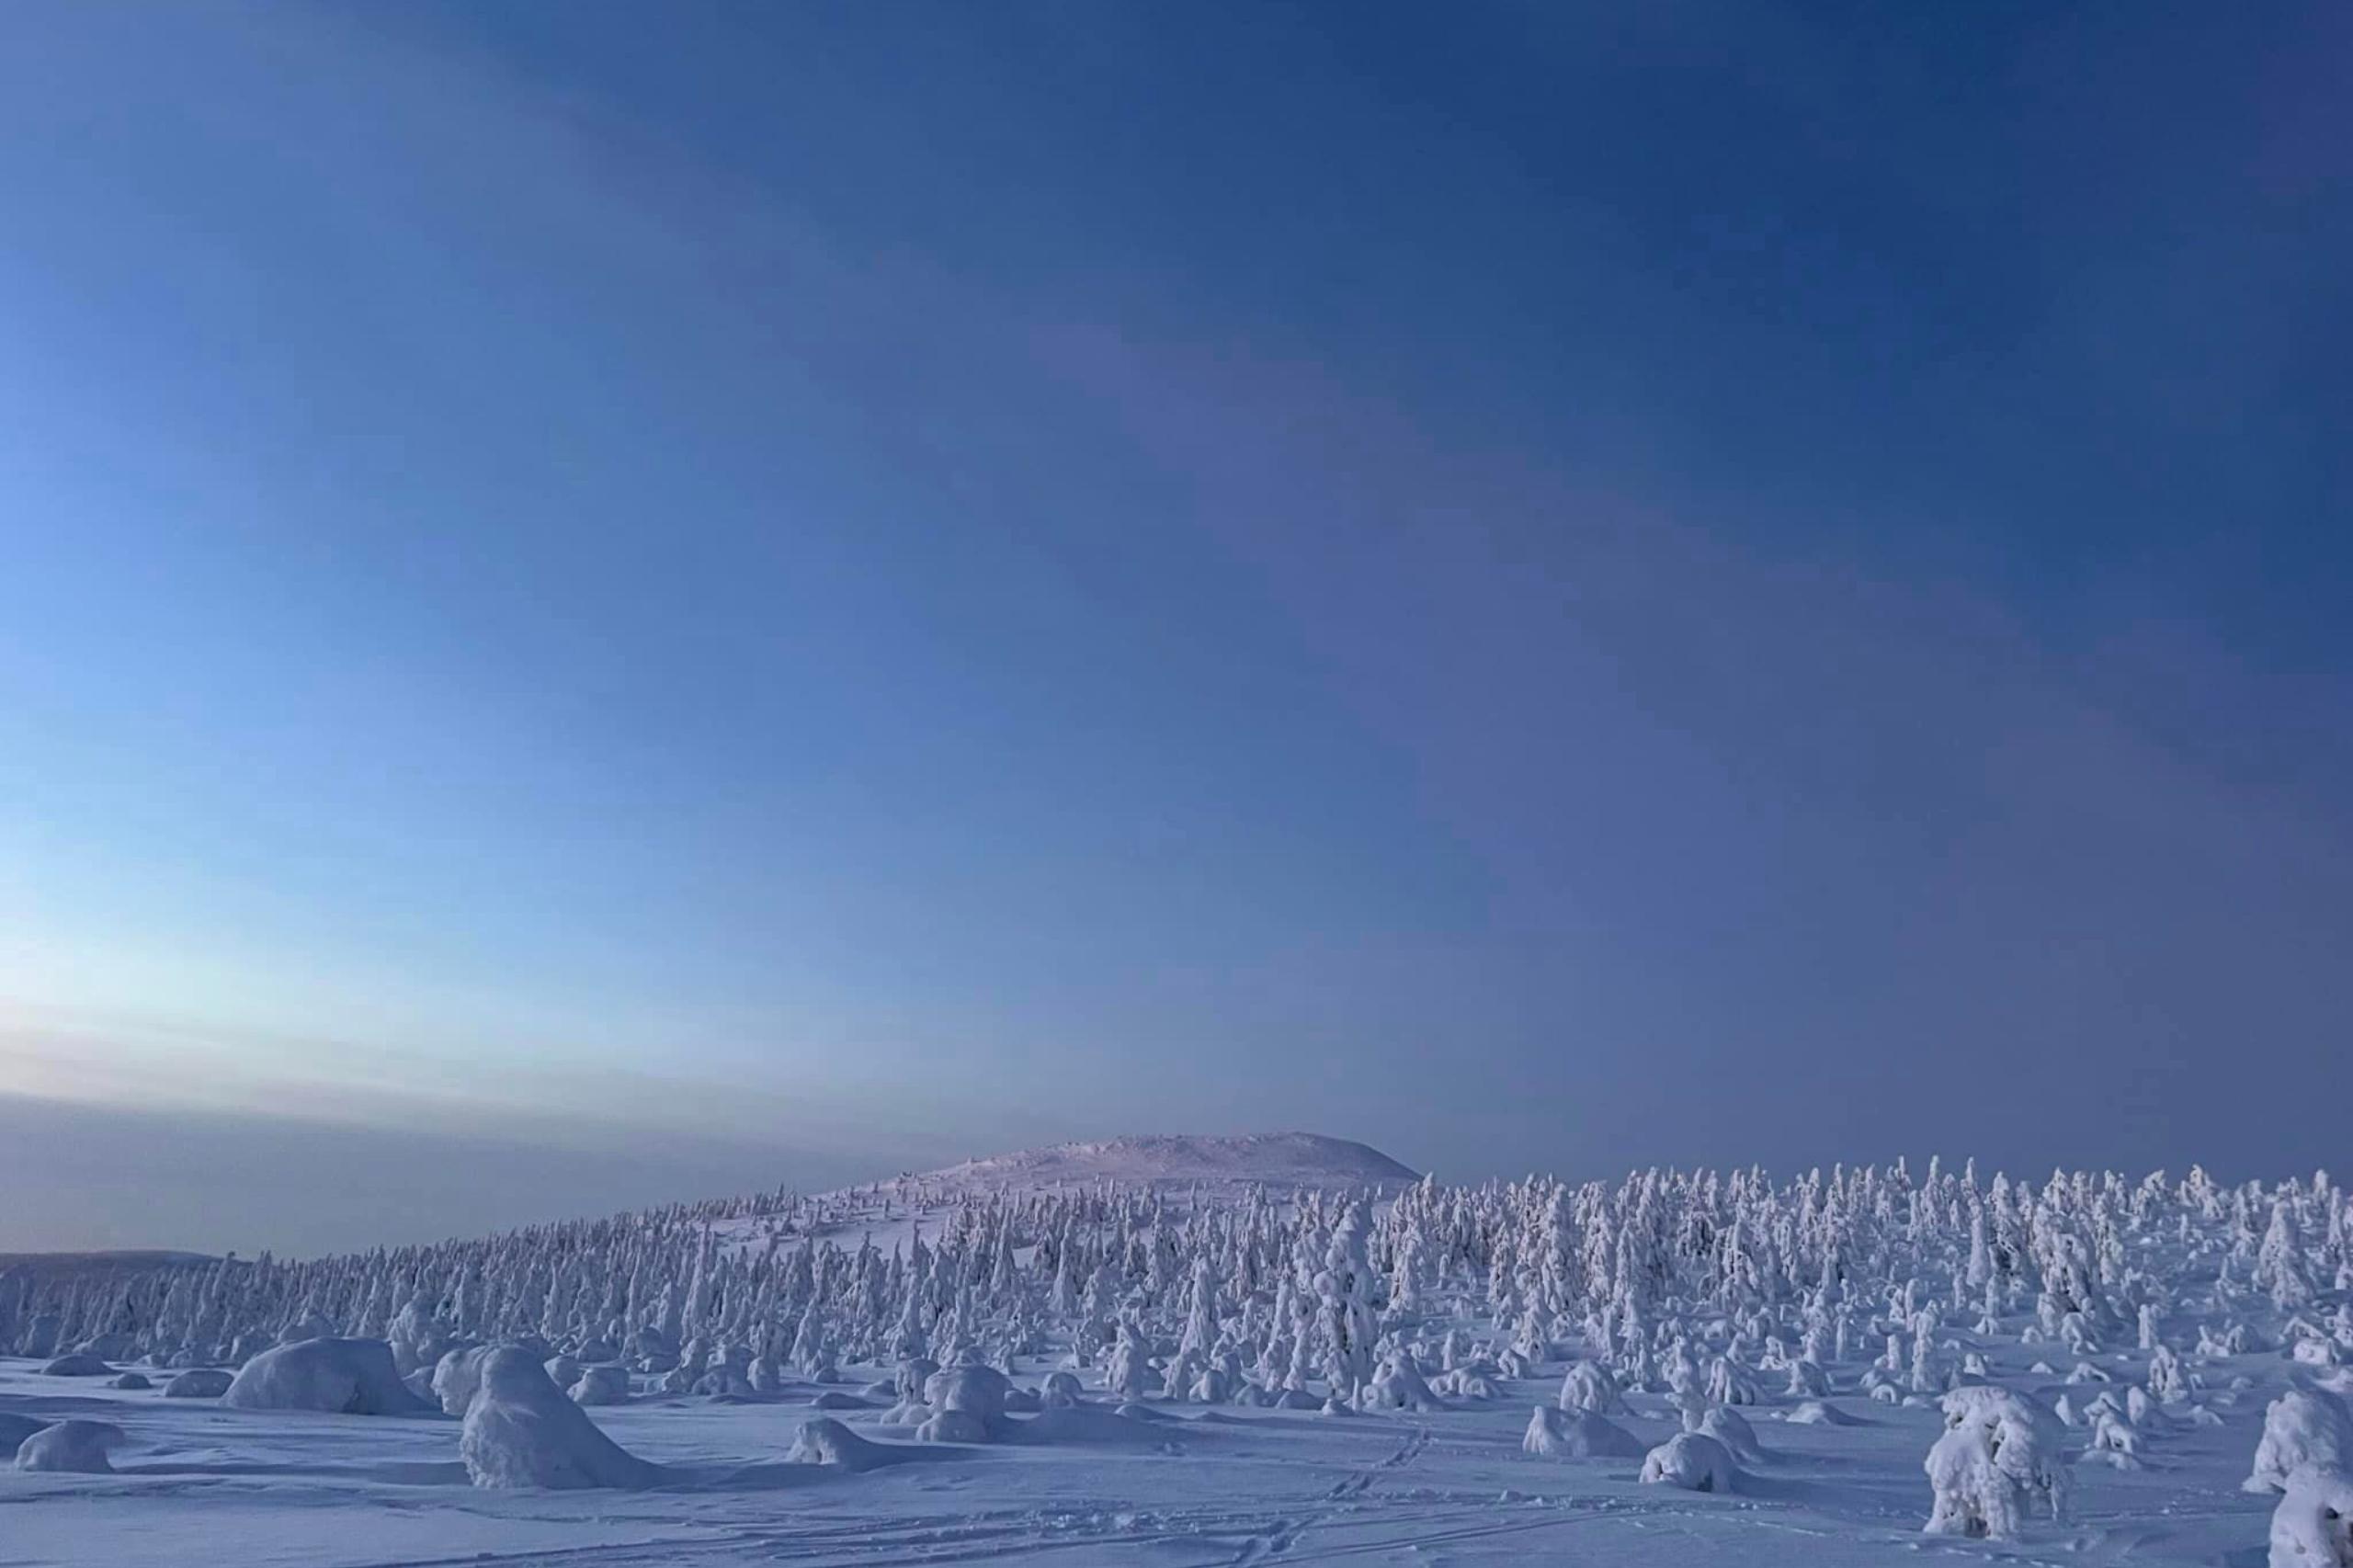 Zuwenig Schnee gibt’s in Lappland nicht. Die Landschaft versinkt hier alljährlich unter einer meterhohen Schneedecke, die das Land in eine fantastische Stille packt. Copyright: Ylläsen Ykkös Caravan